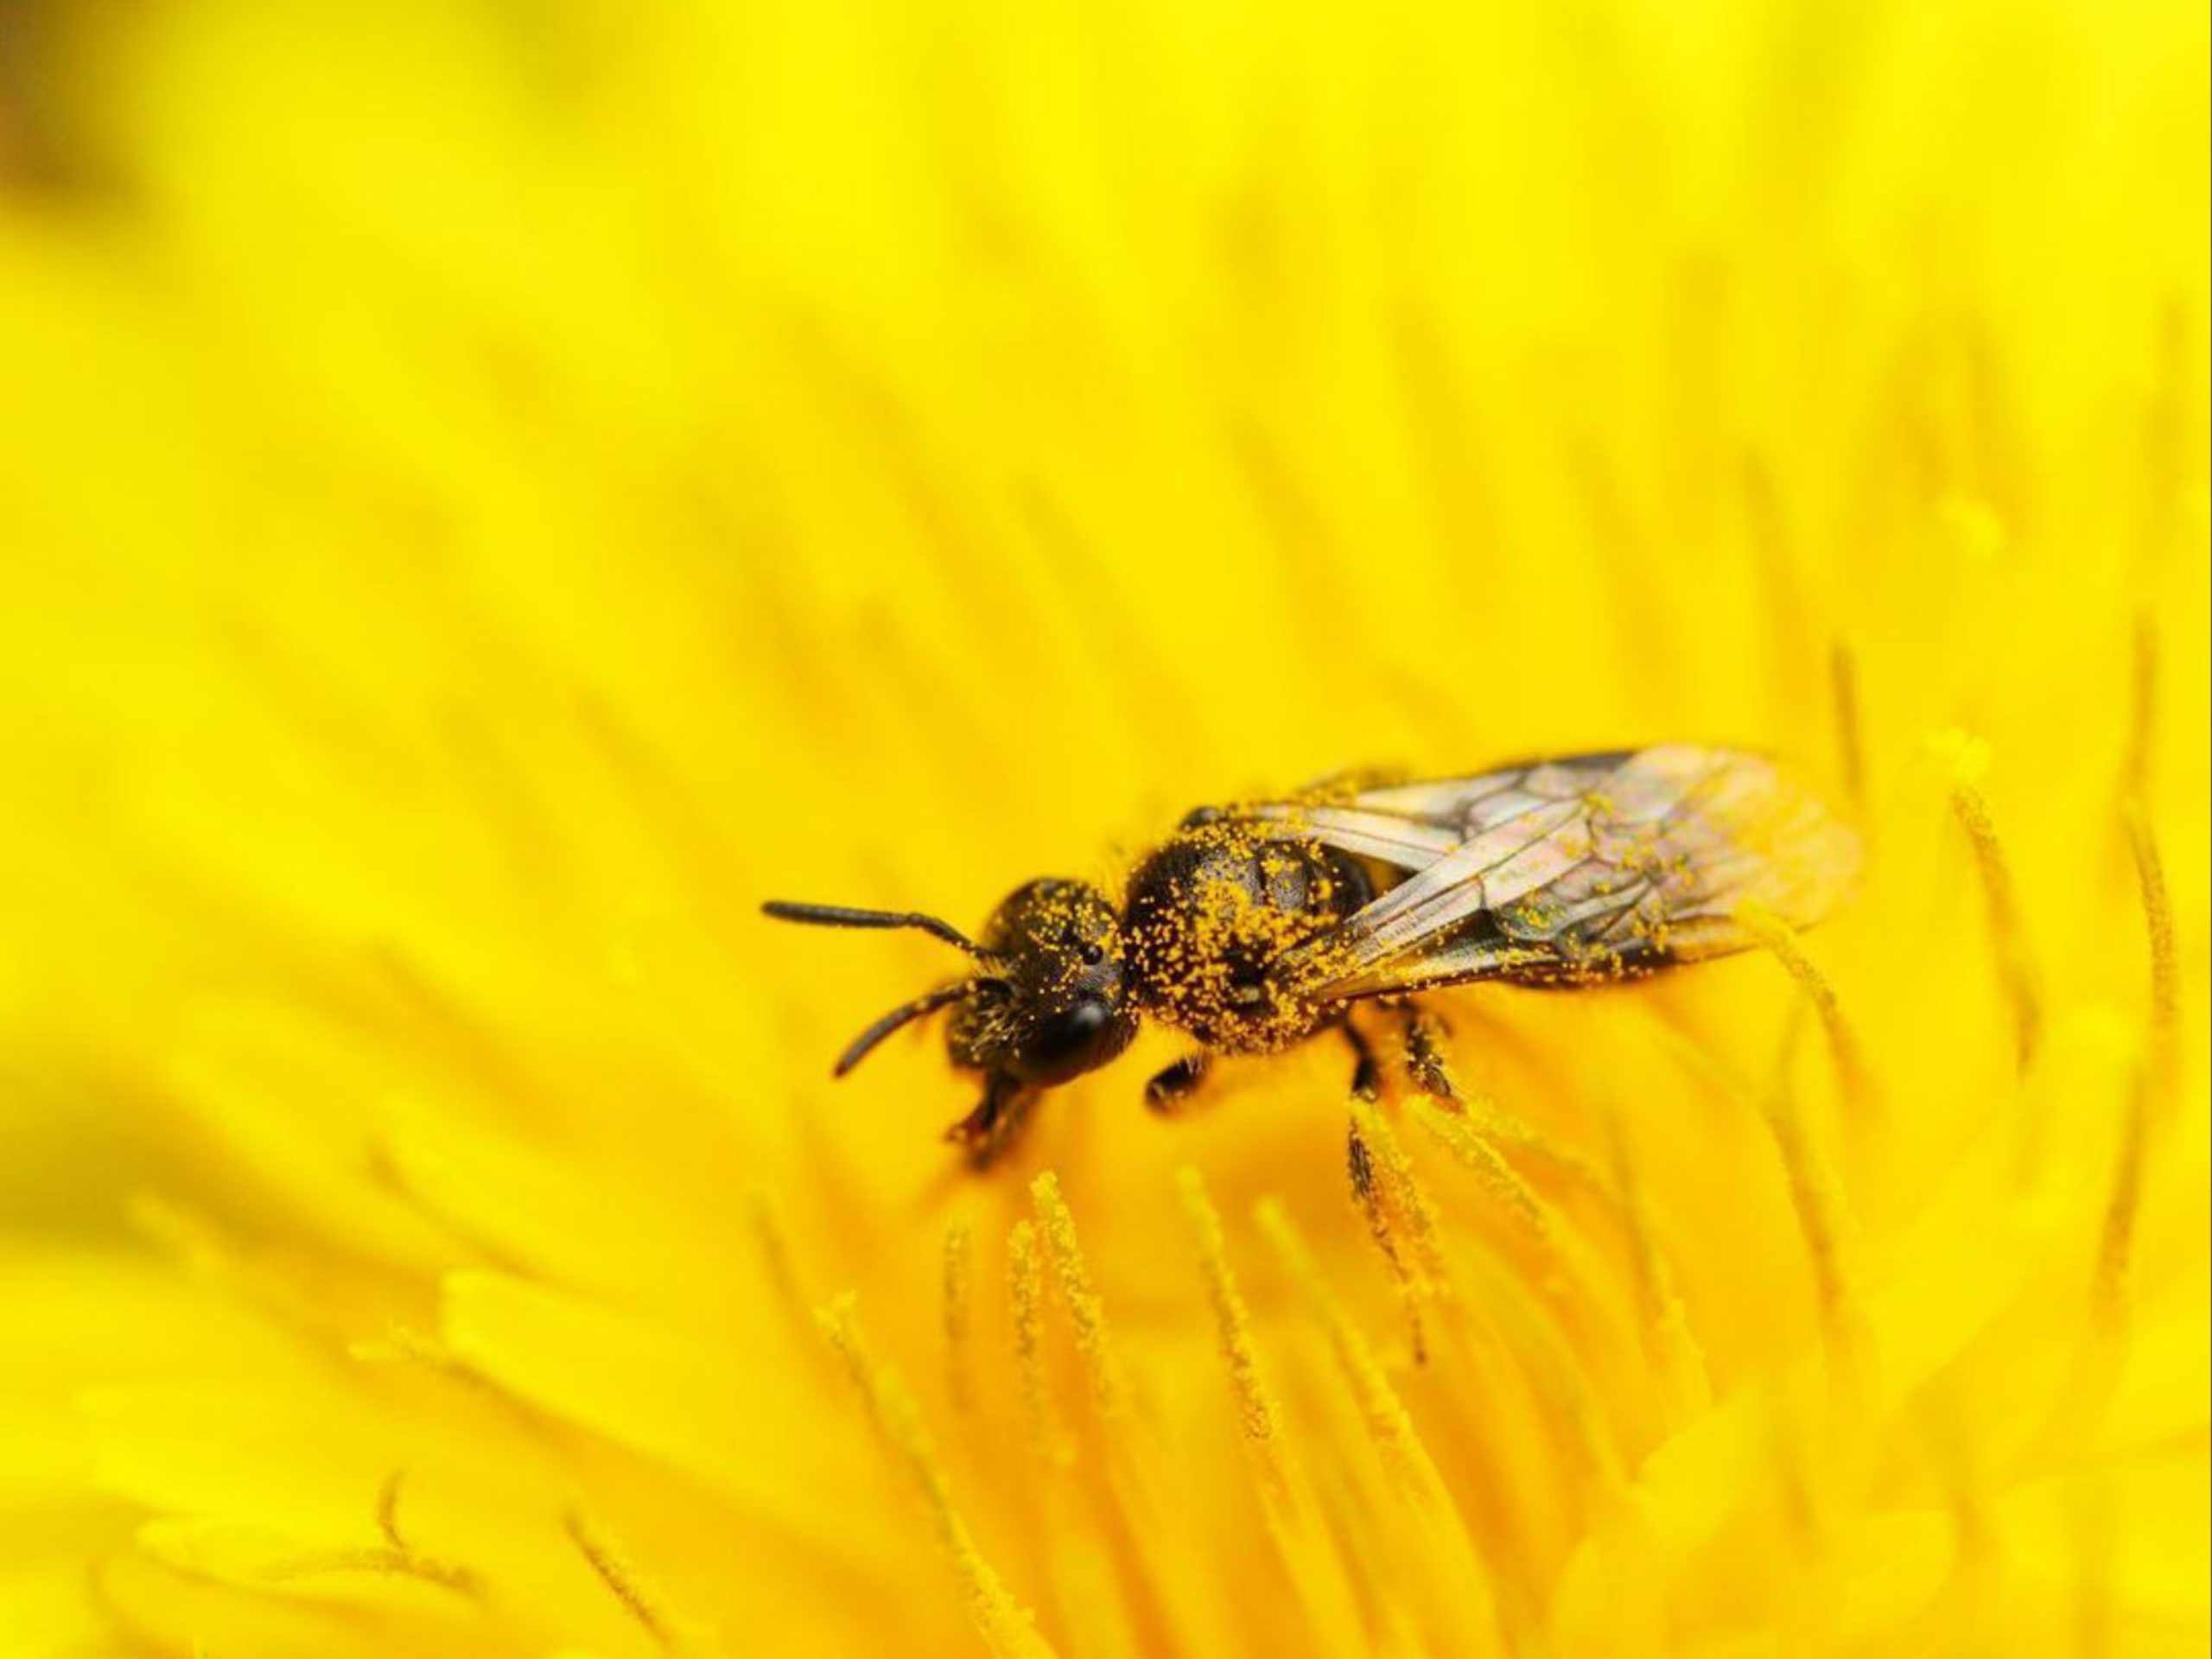 Honeybee Closeup